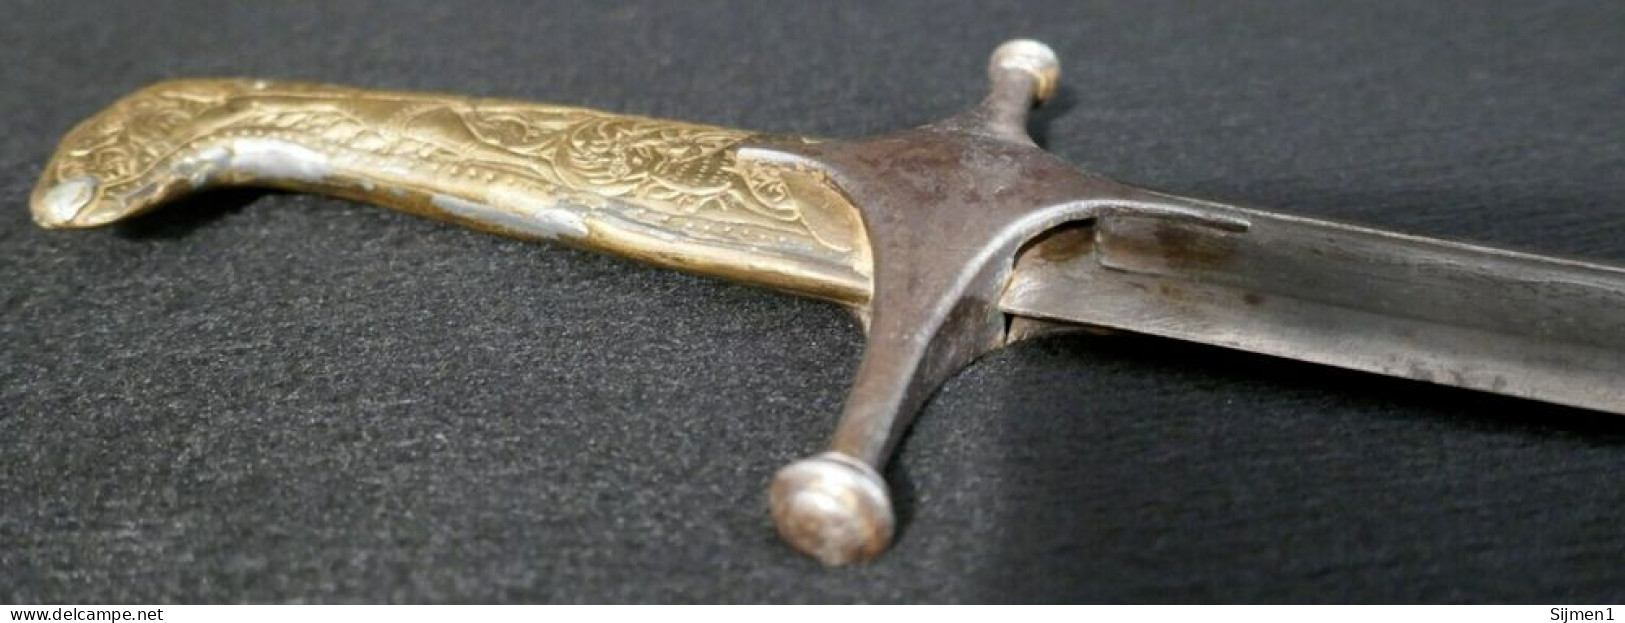 Antique Épée Napoléonienne Ingénieur Pionnier Allemand Sawback Sword 'Putch Sohn' & Fourreau